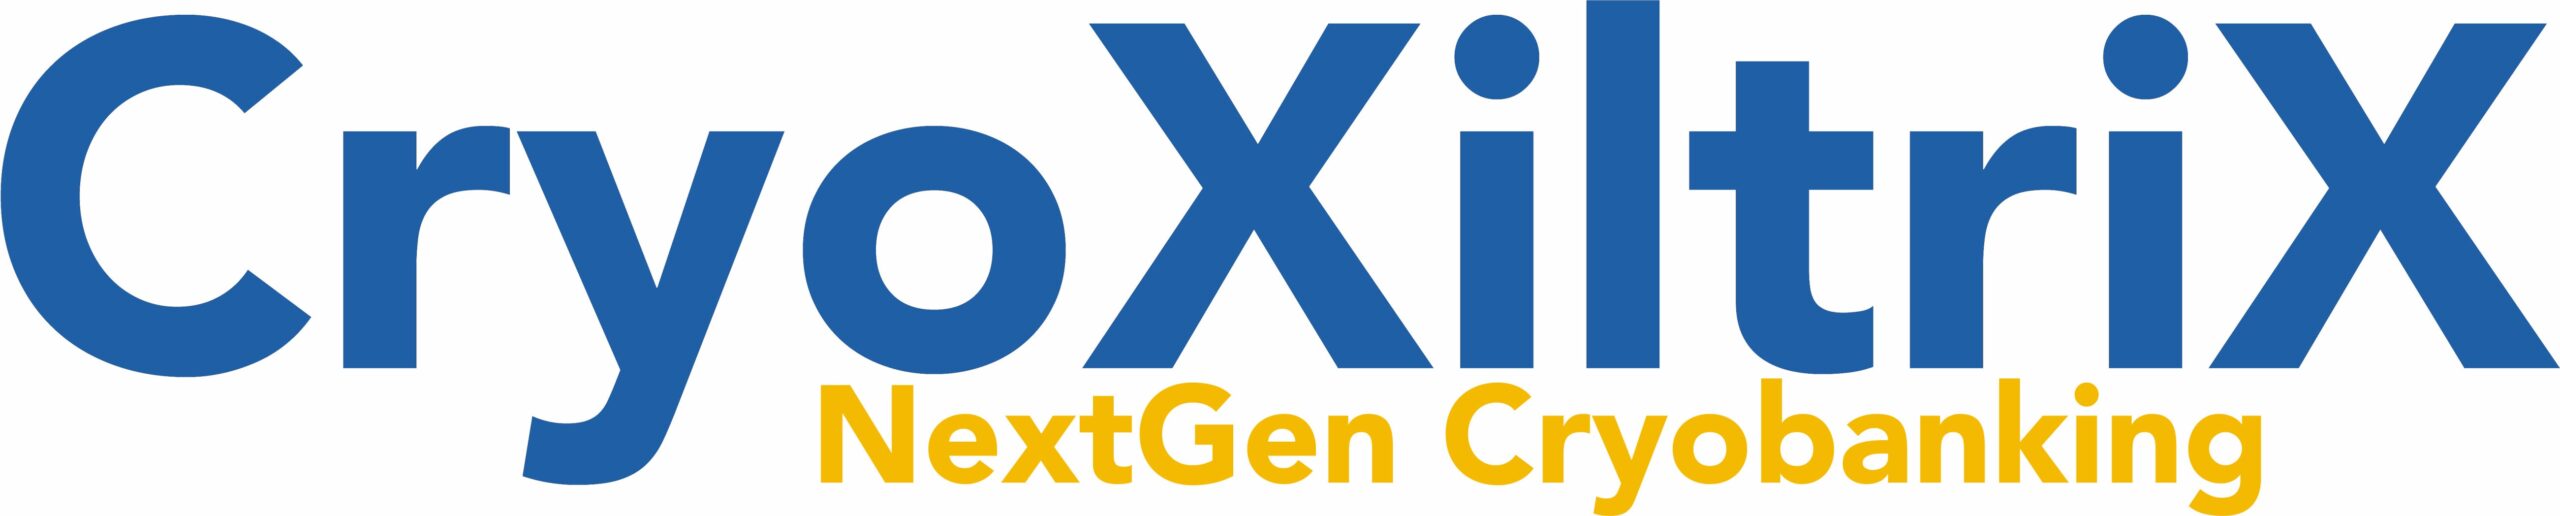 CryoXiltriX - logo